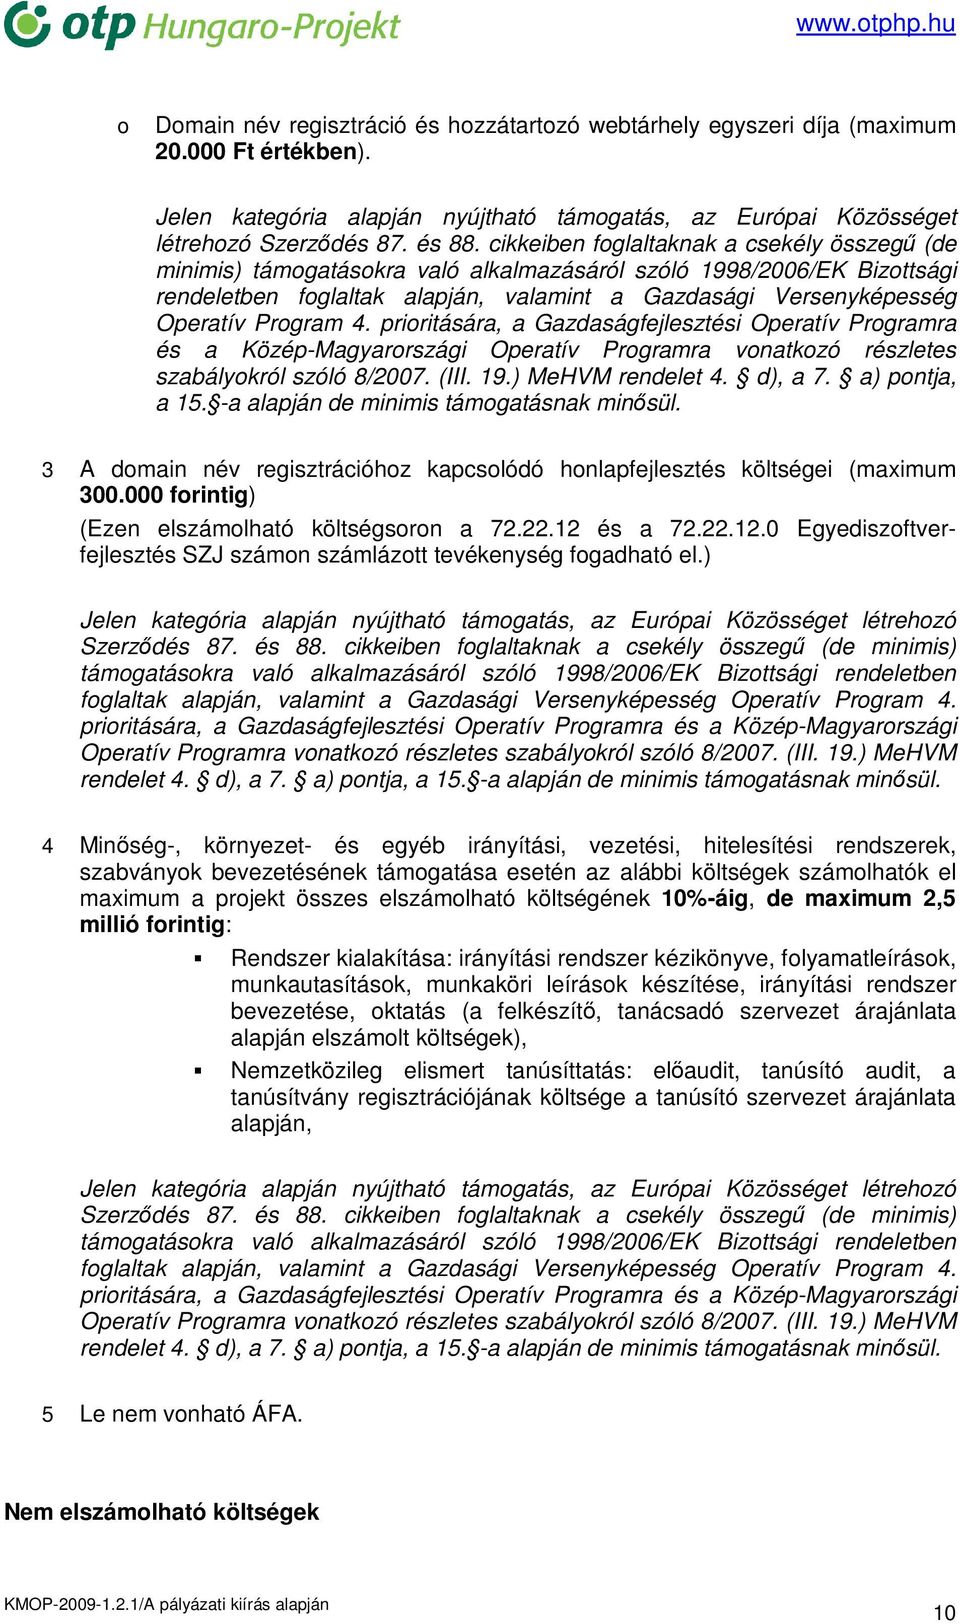 Program 4. prioritására, a Gazdaságfejlesztési Operatív Programra és a Közép-Magyarországi Operatív Programra vonatkozó részletes szabályokról szóló 8/2007. (III. 19.) MeHVM rendelet 4. d), a 7.